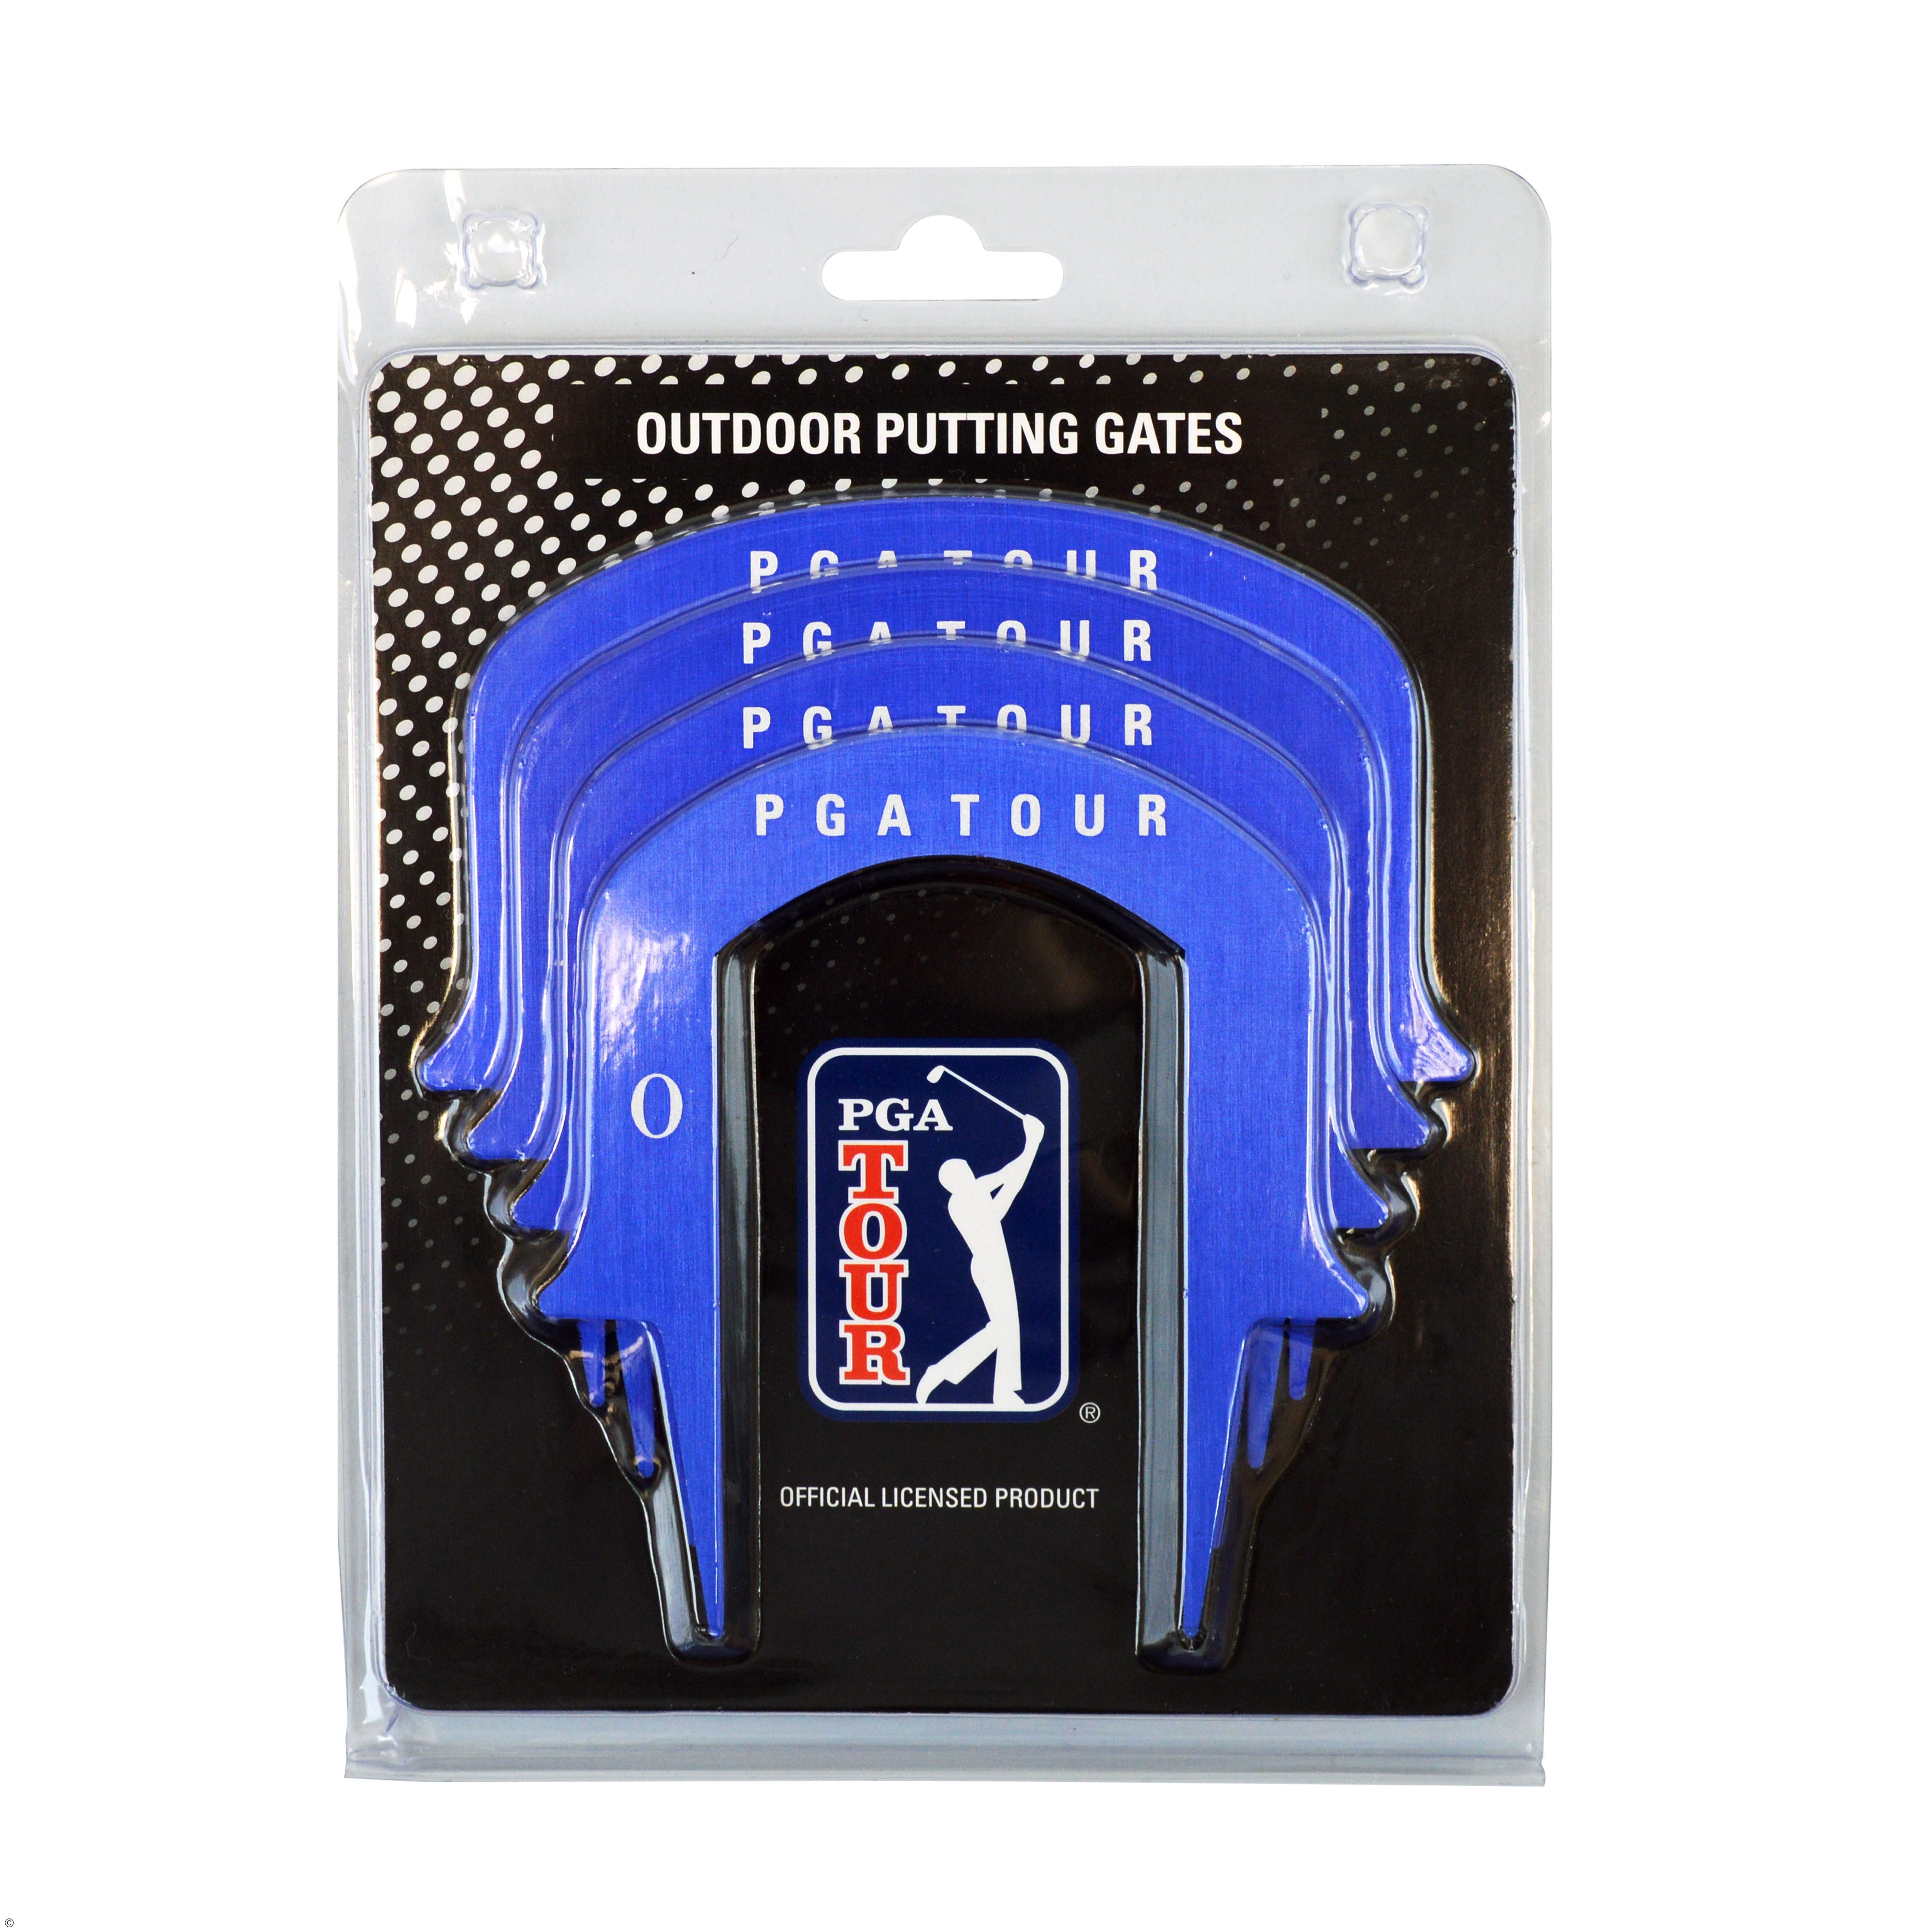 PGA Putting Gates - Améliorez votre précision de putting